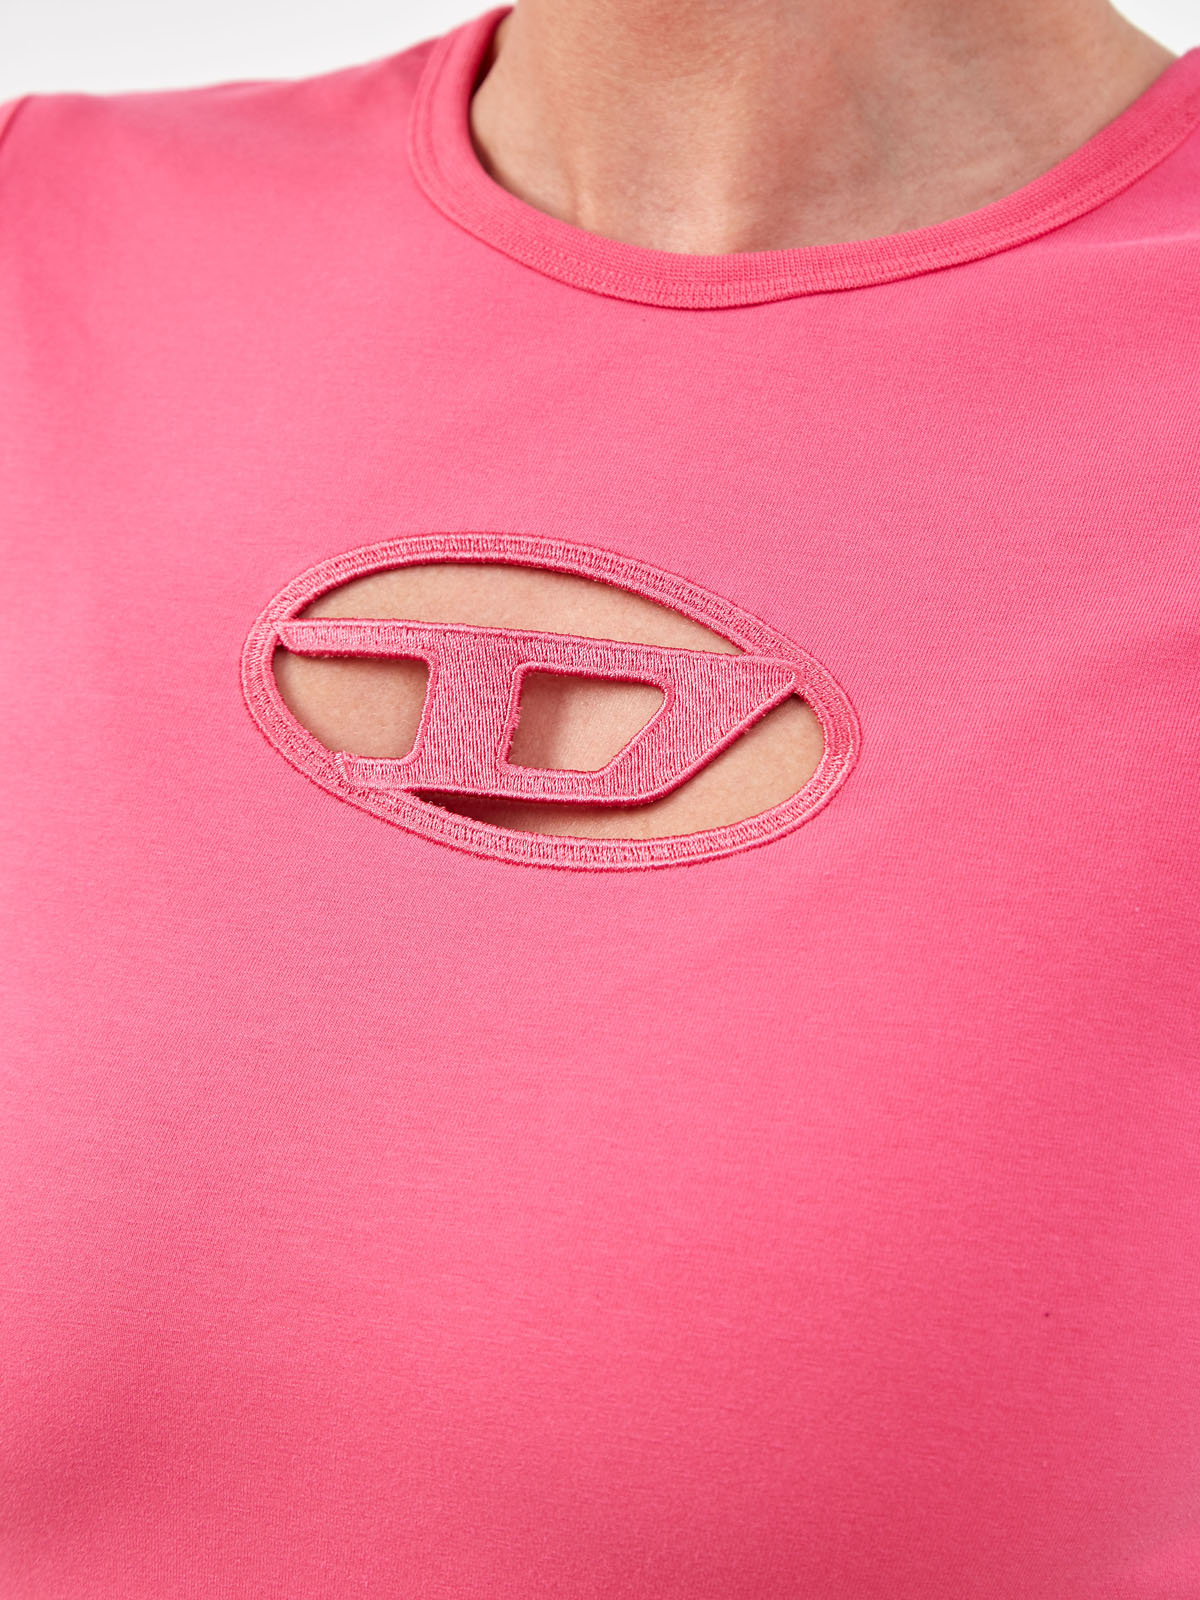 Облегающая футболка T-Angie с логотипом в лазерной технике DIESEL, цвет розовый, размер S - фото 5